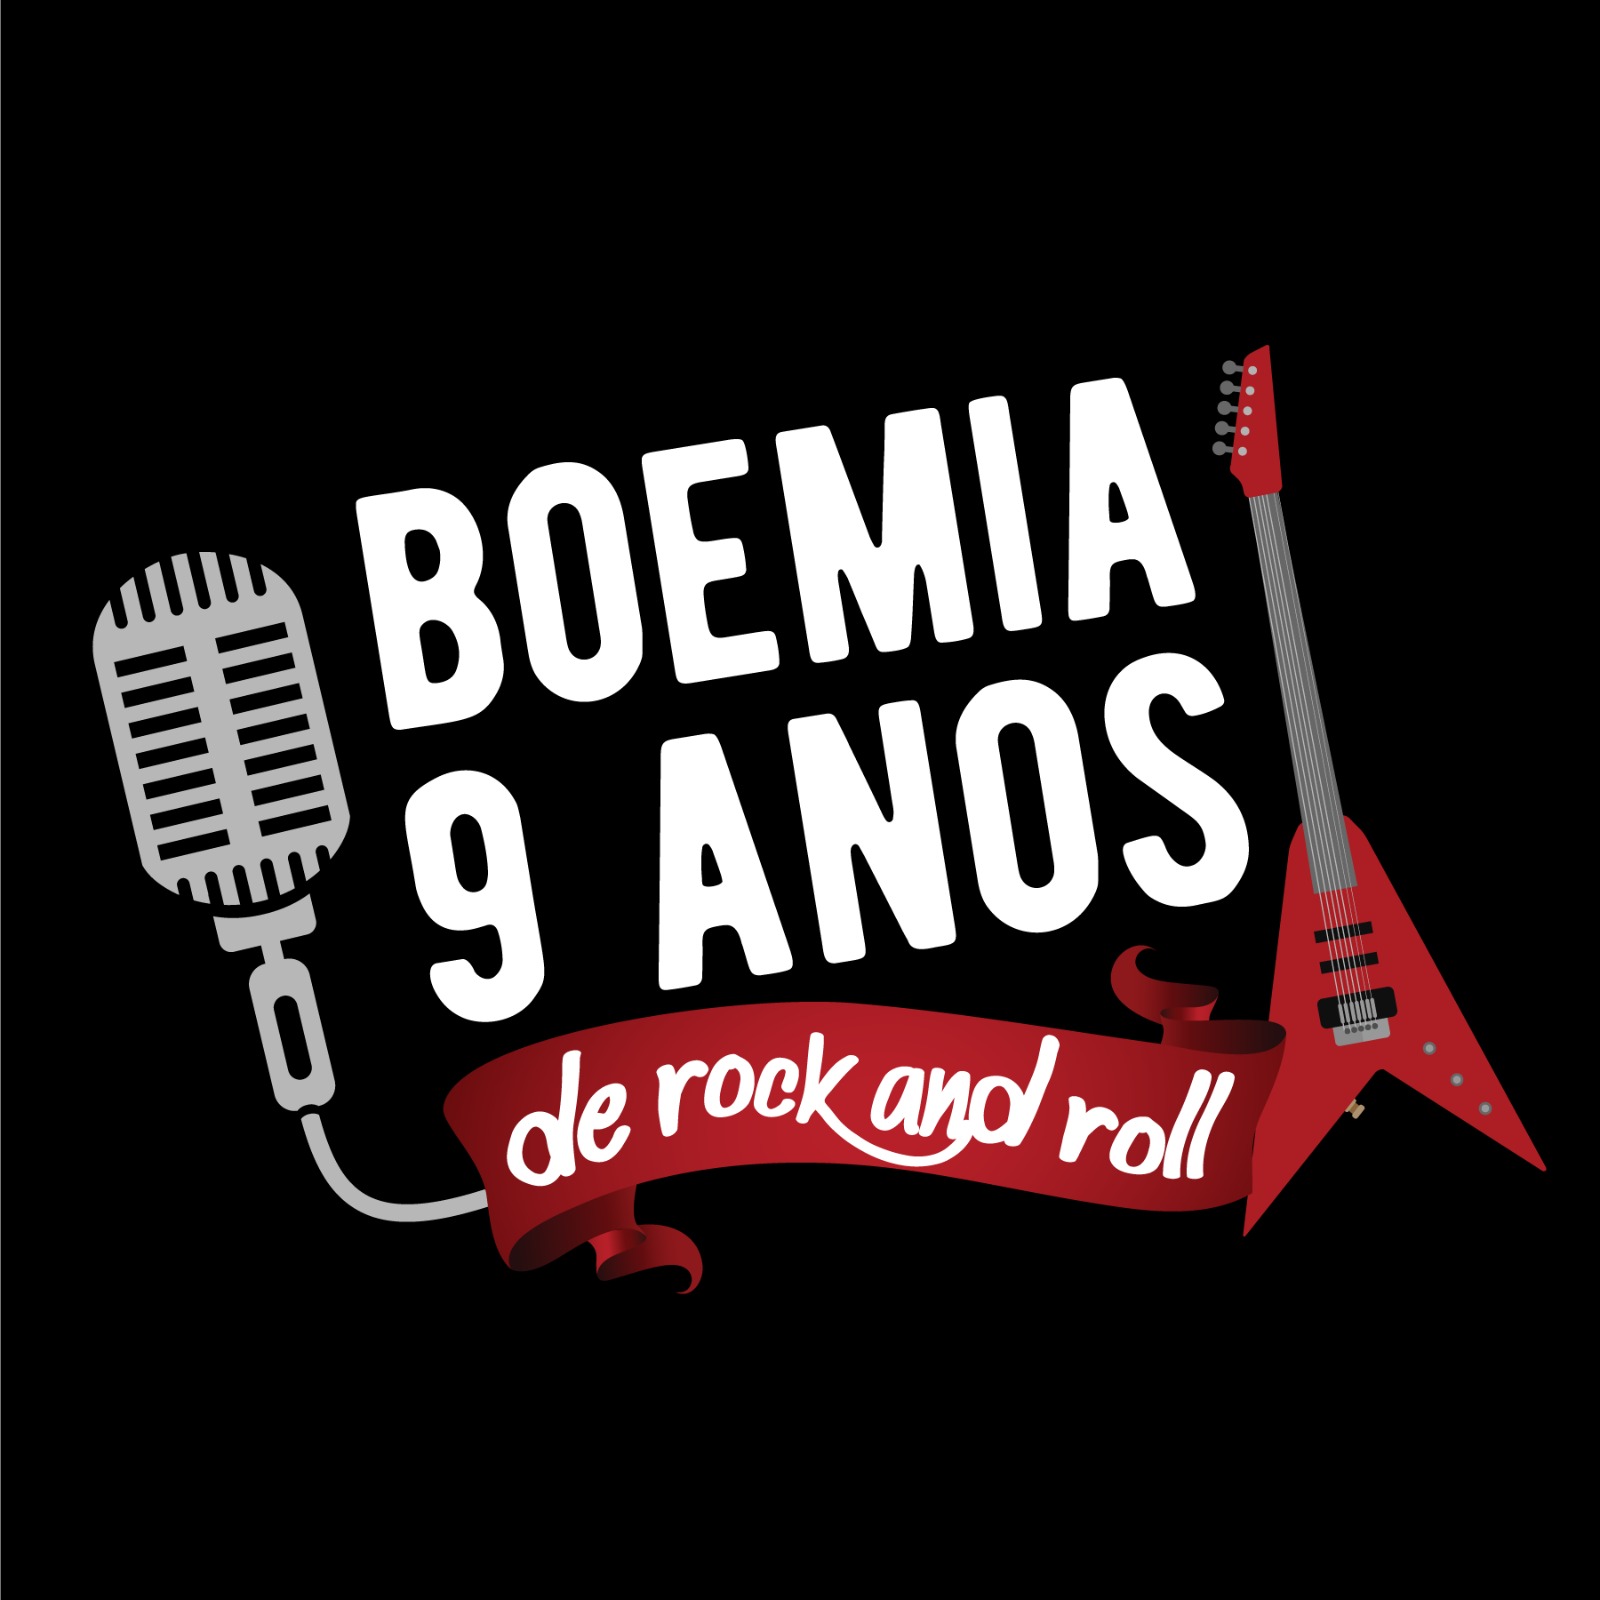 Logo_boemia_9_anos